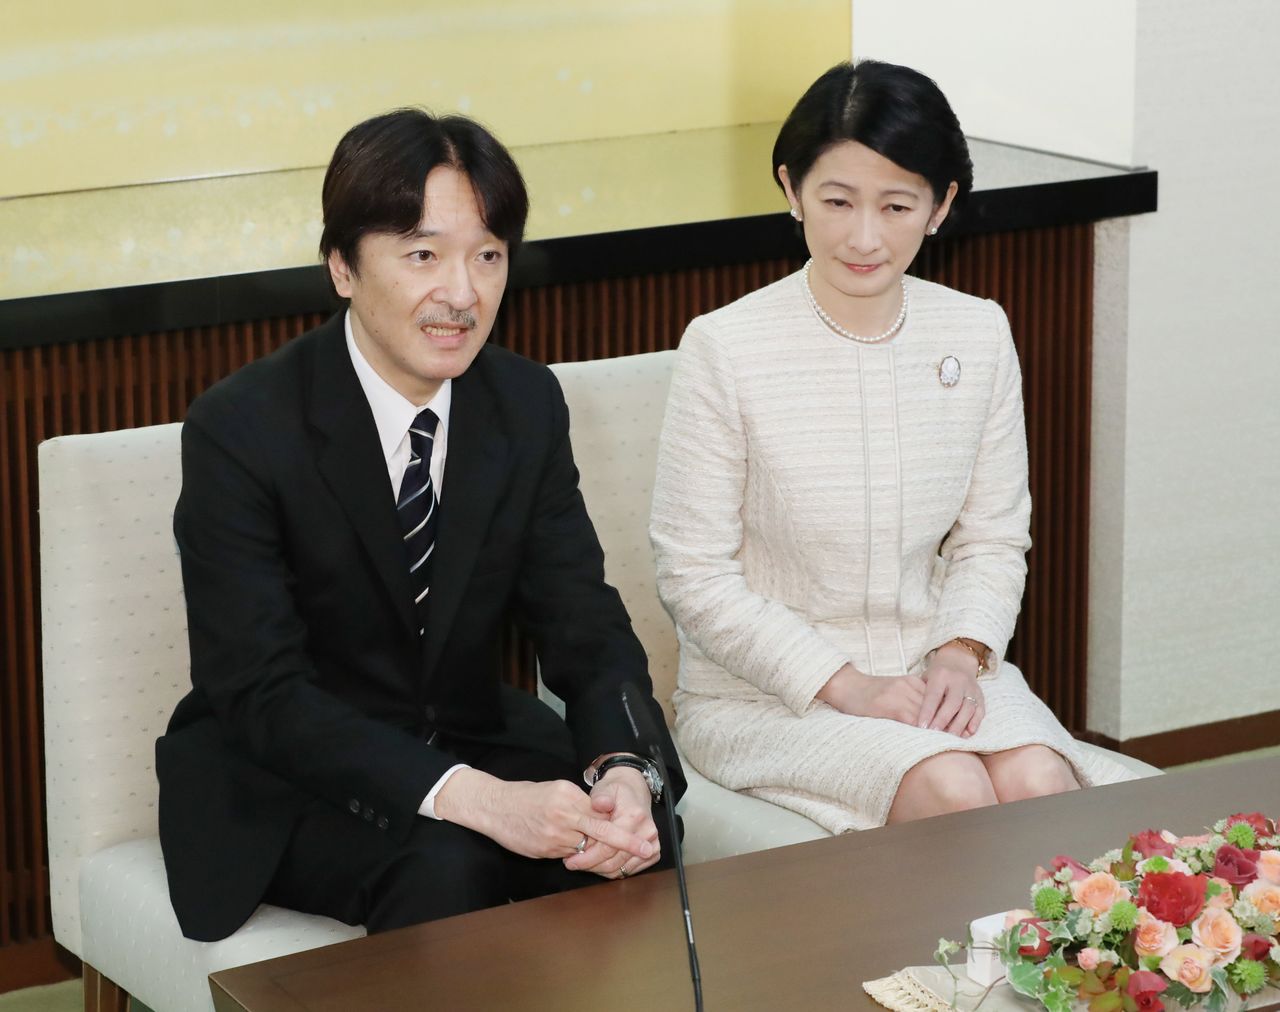 Los príncipes de Akishino responden a las preguntas sobre el compromiso matrimonial de la princesa Mako, en la rueda de prensa celebrada la víspera del 53 cumpleaños del príncipe. Fotografía tomada el 22 de noviembre de 2018 en la antigua residencia Akishino, Tokio. (Jiji Press)